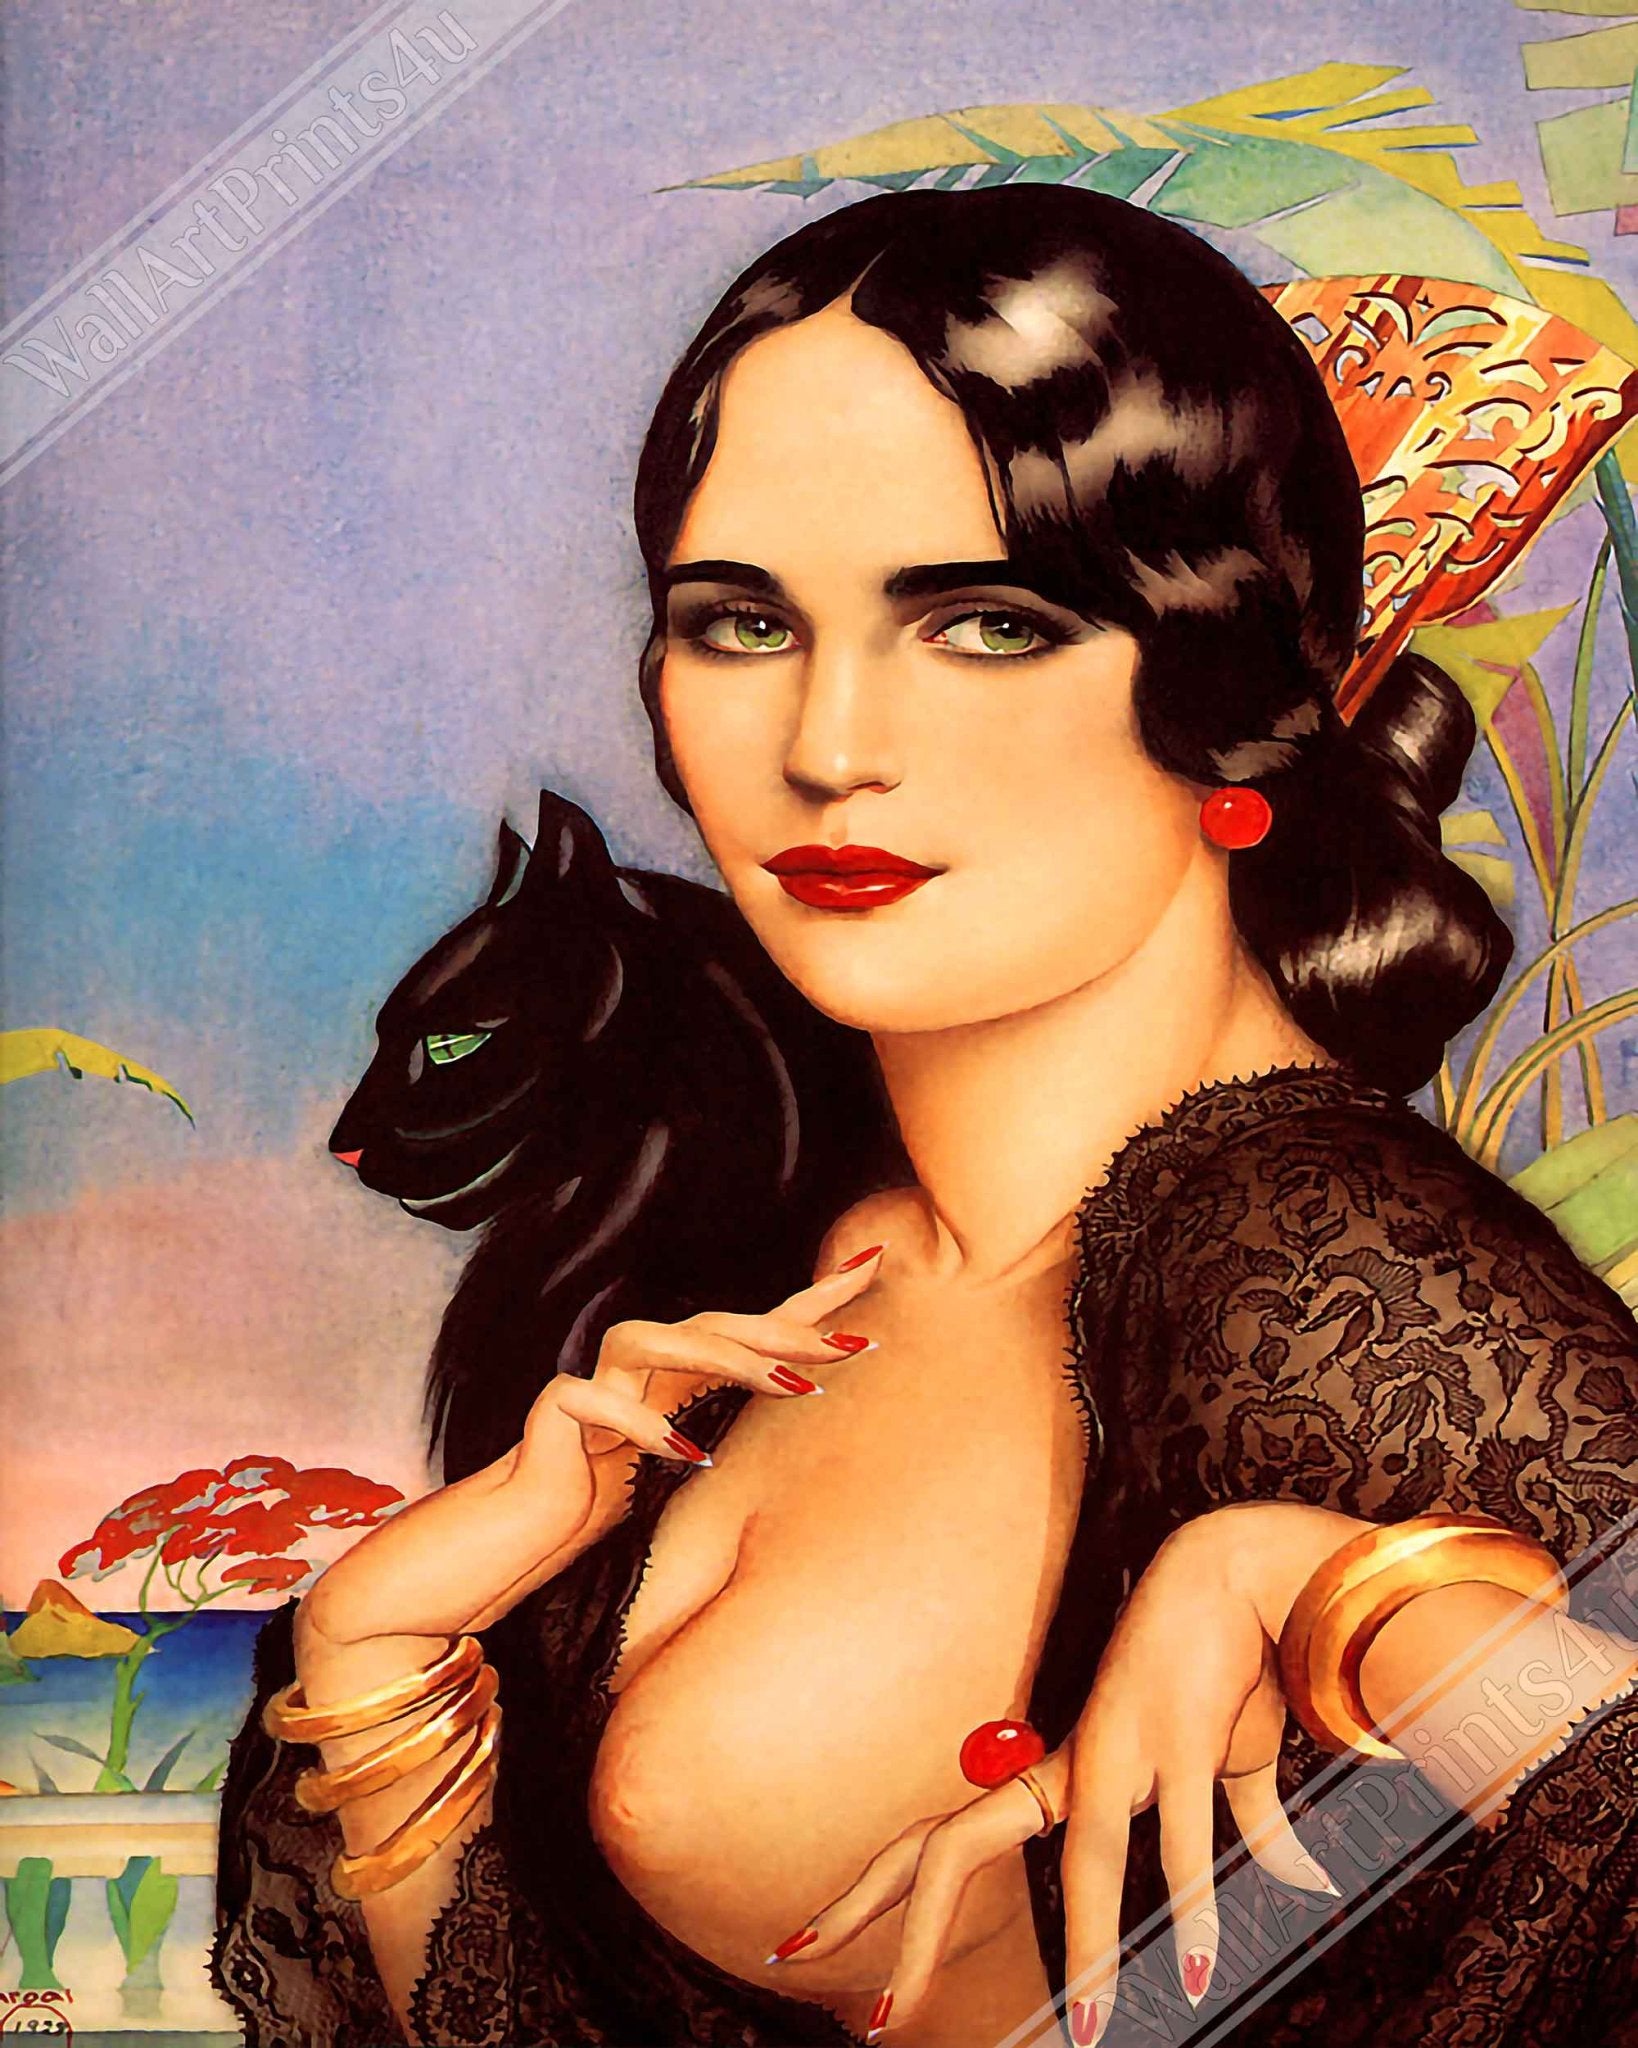 Vintage Pin Up Girl Framed, Alberto Vargas, Spanish Gypsy Black Cat - Vintage Art - Retro Pin Up Girl Framed Print - 1928 - WallArtPrints4U